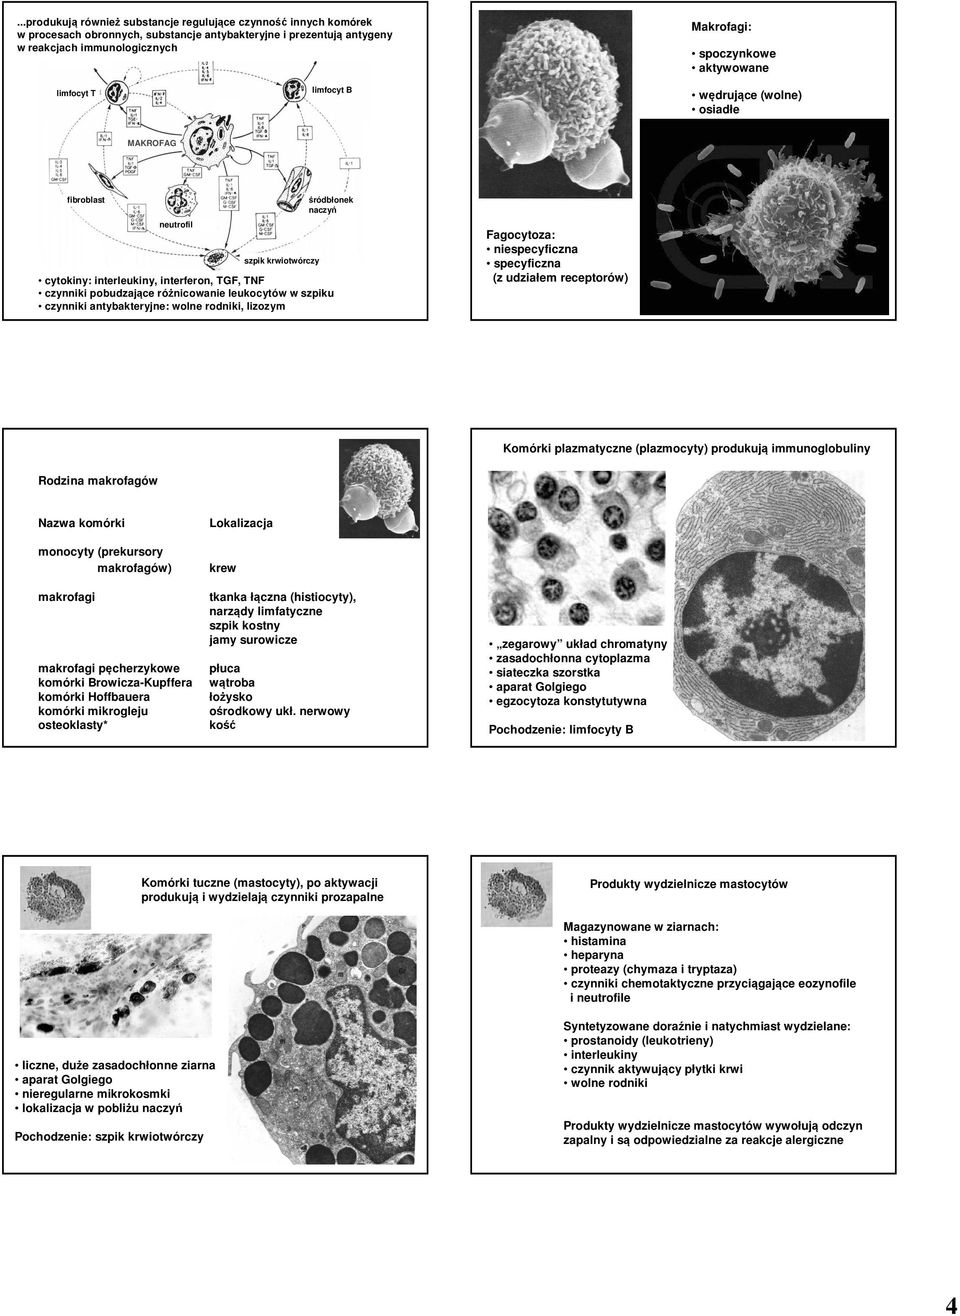 różnicowanie leukocytów w szpiku czynniki antybakteryjne: wolne rodniki, lizozym Fagocytoza: niespecyficzna specyficzna (z udziałem receptorów) Komórki plazmatyczne (plazmocyty) produkują